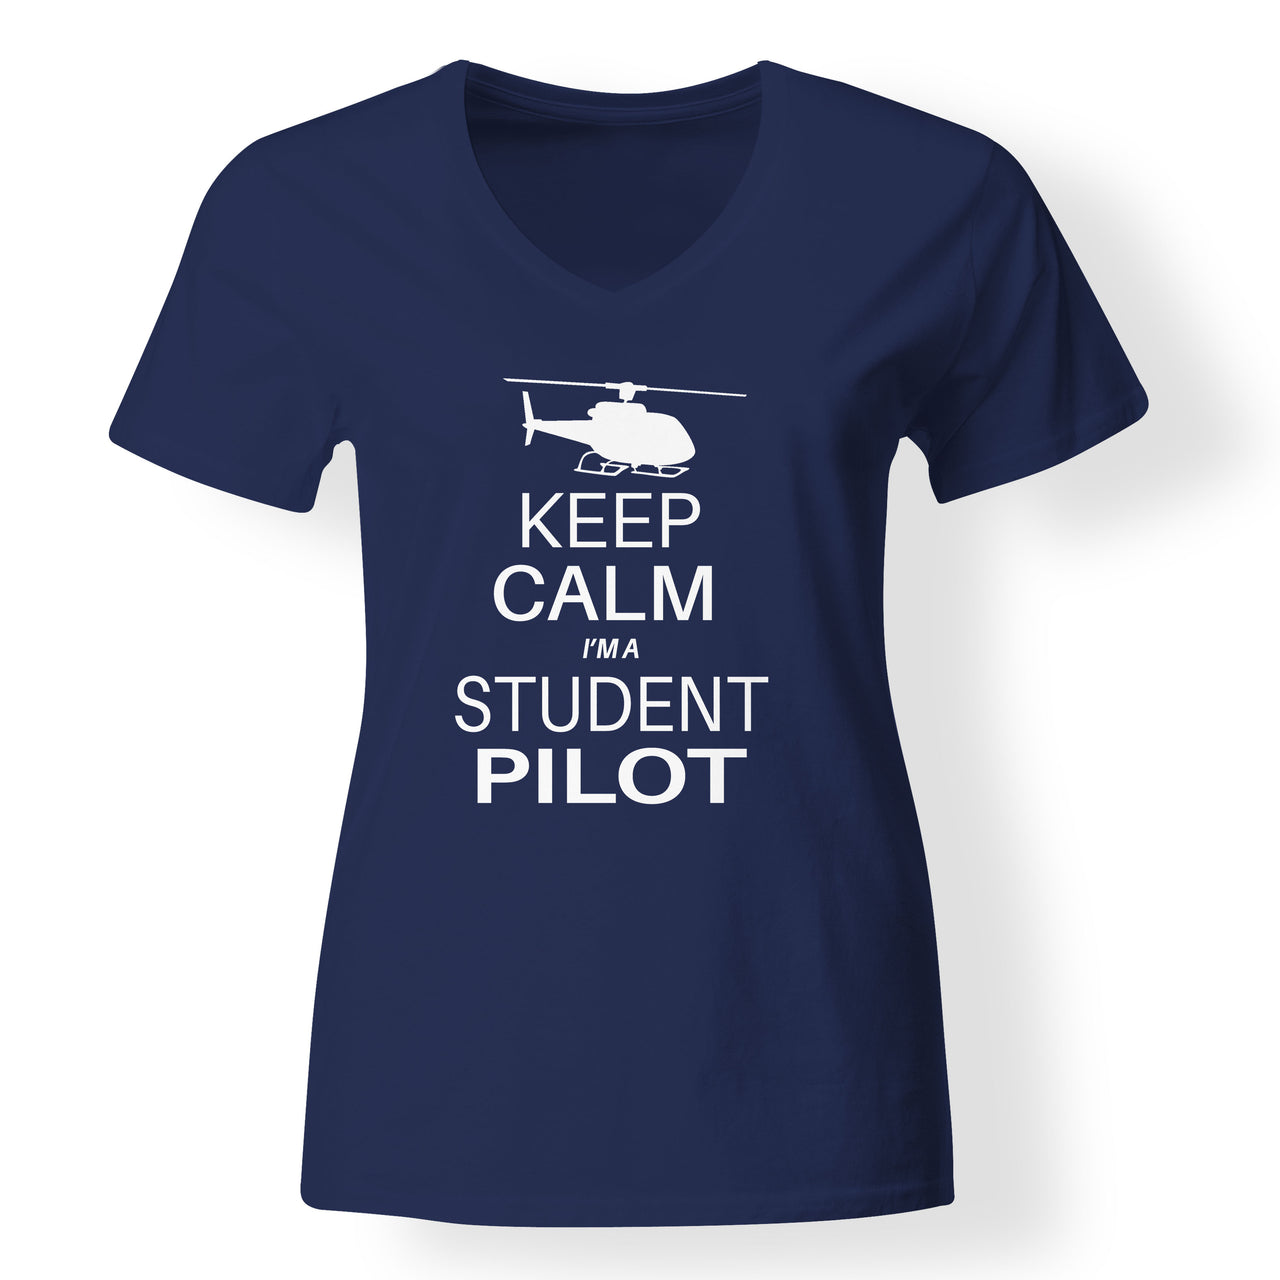 Student Pilot (Helicopter) Designed V-Neck T-Shirts